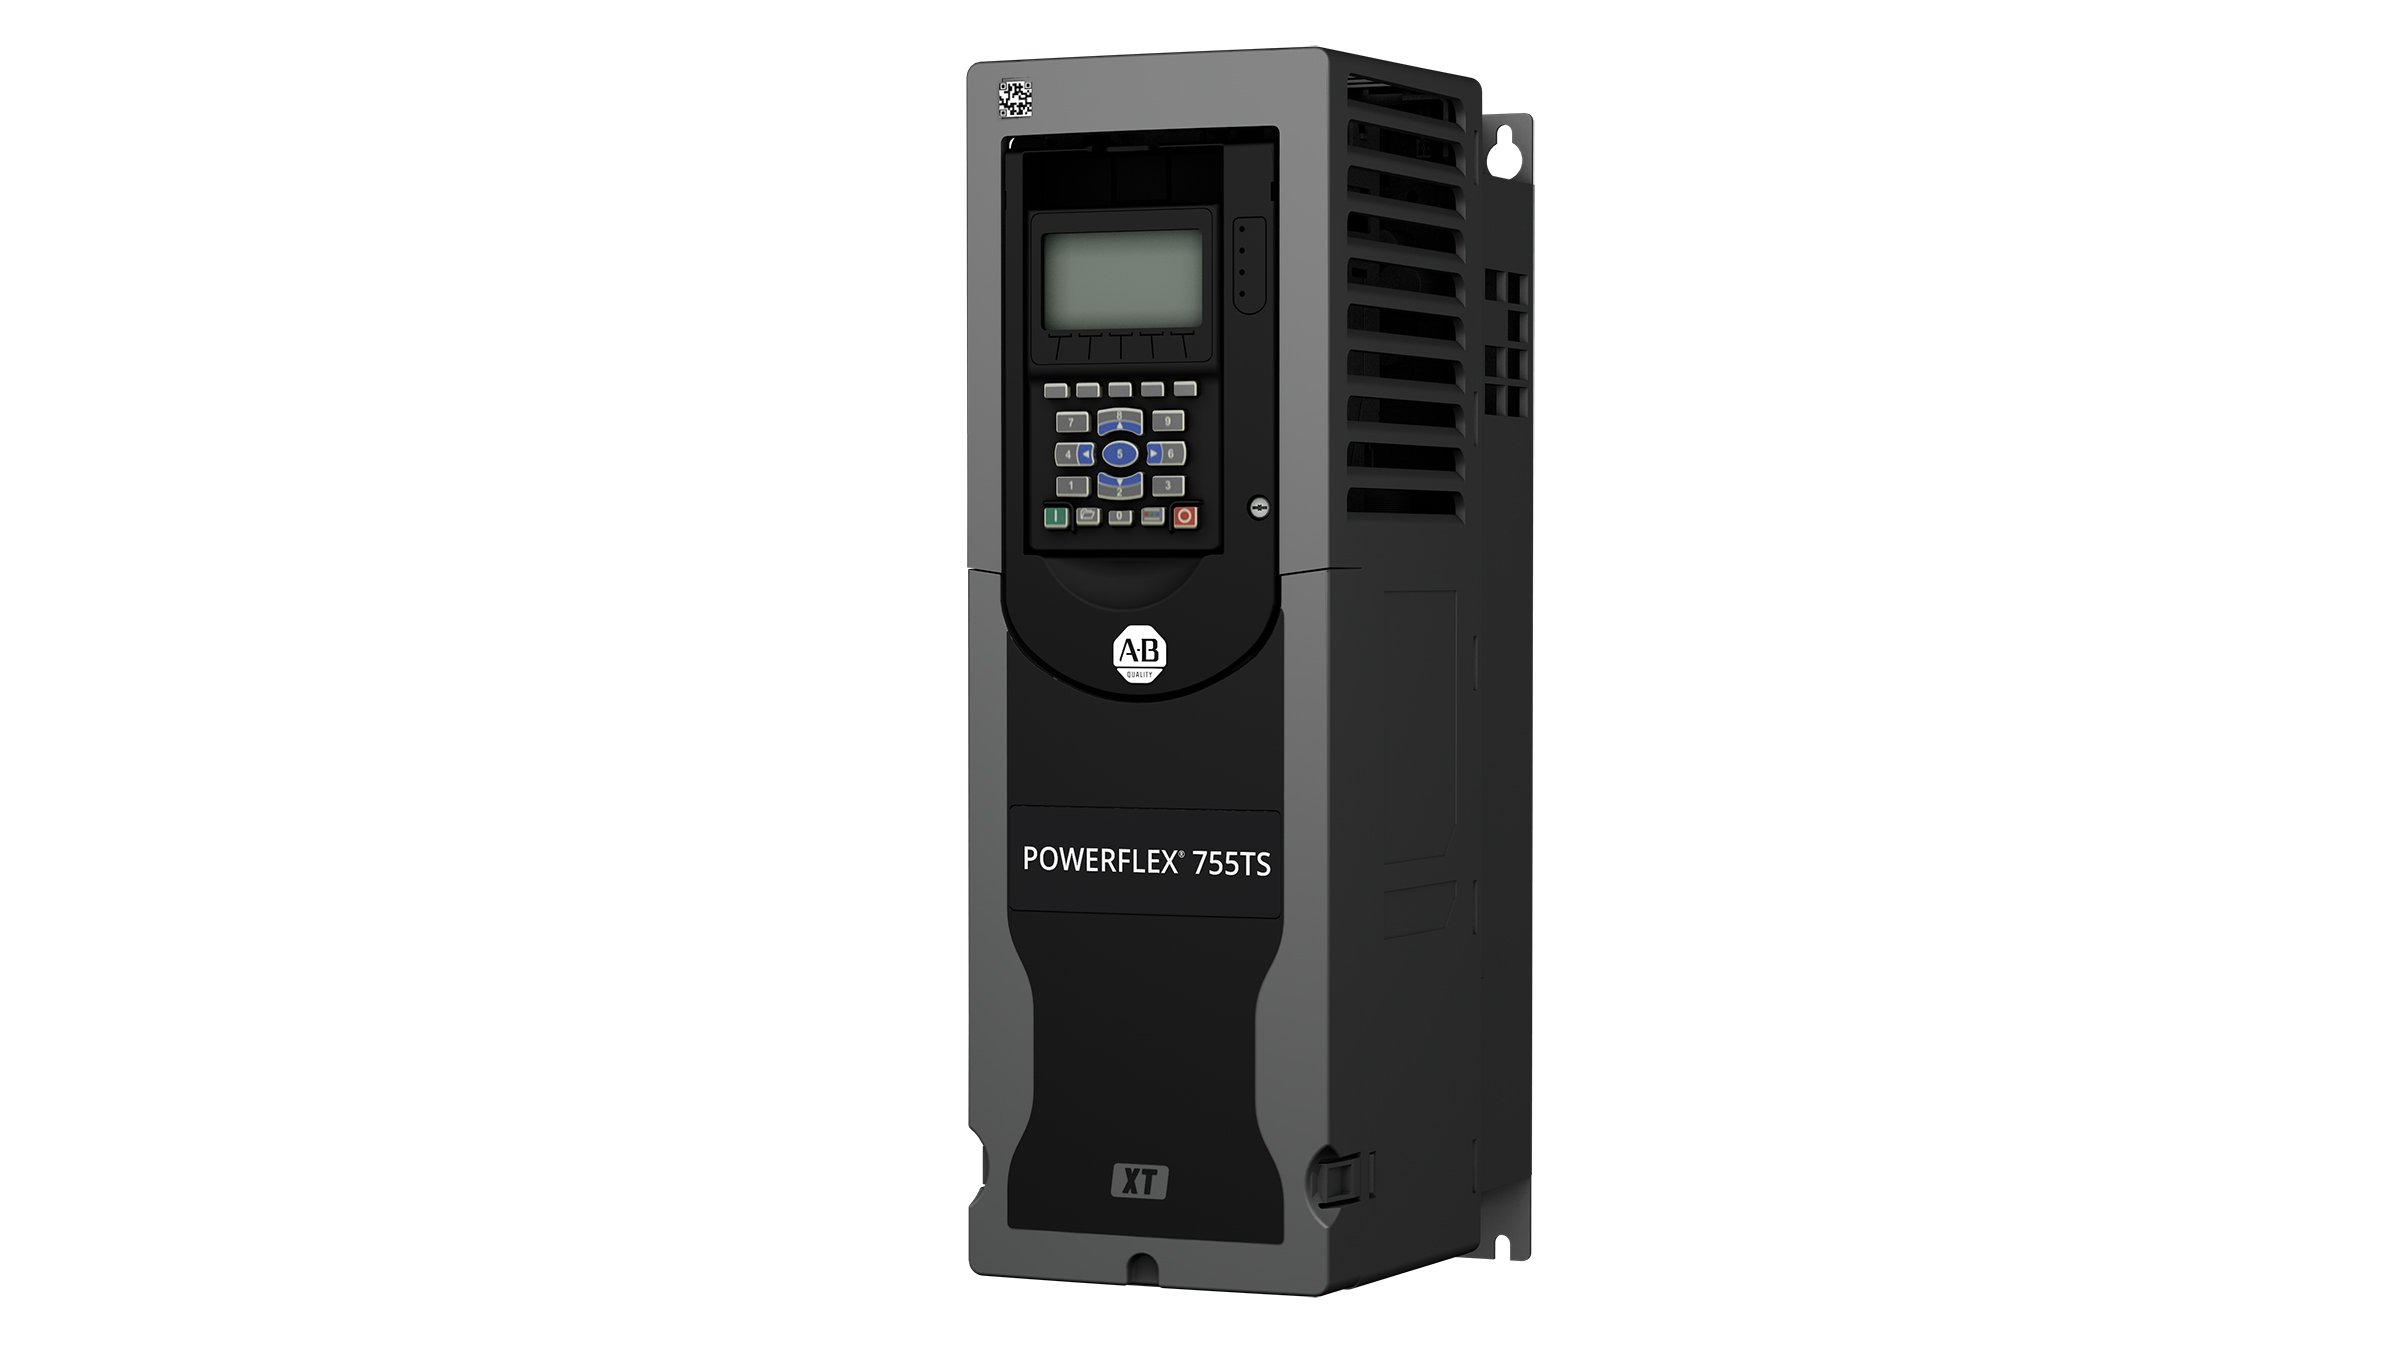 Variateur de fréquence PowerFlex 755TS rectangulaire gris foncé avec des boutons en façade et un écran, et conception spéciale XT pour la protection contre les gaz corrosifs